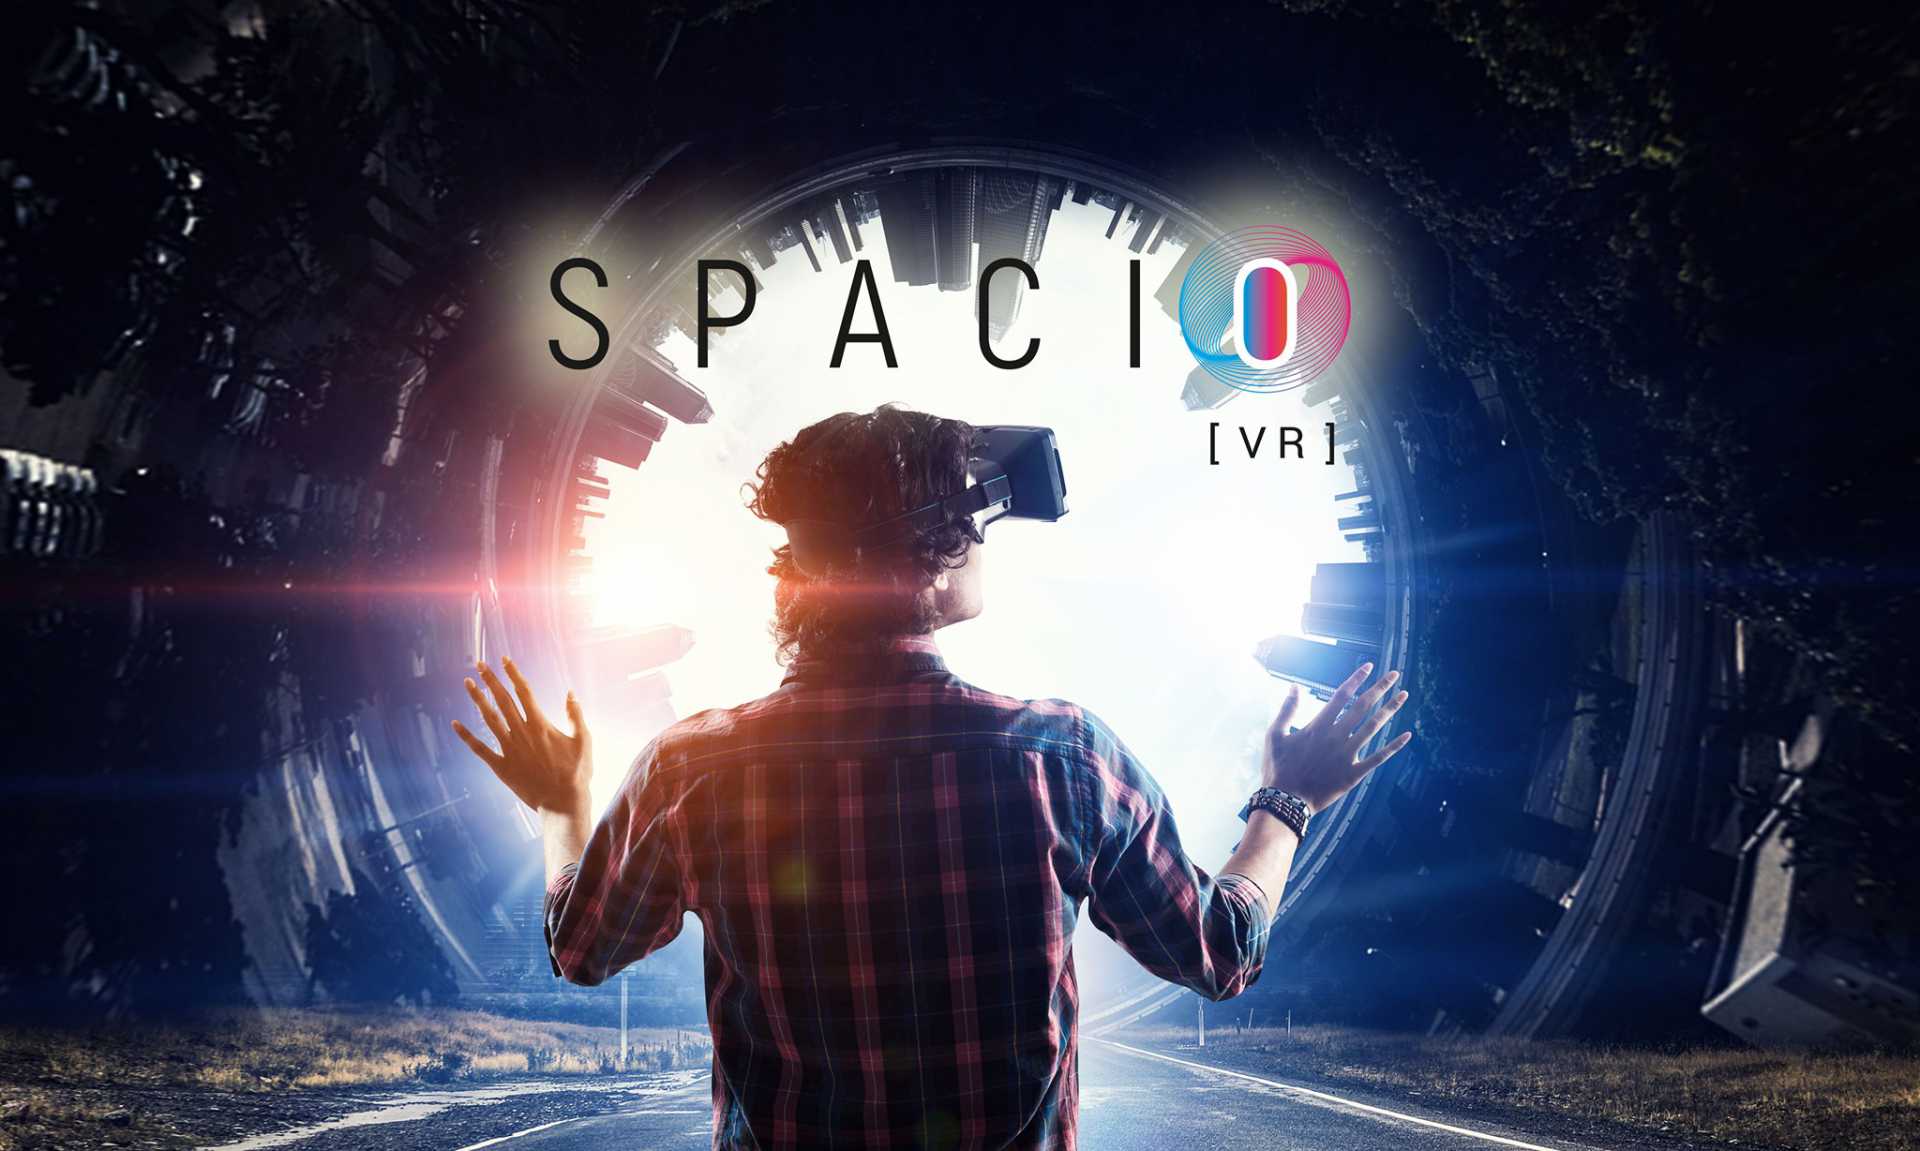 Spacio VR